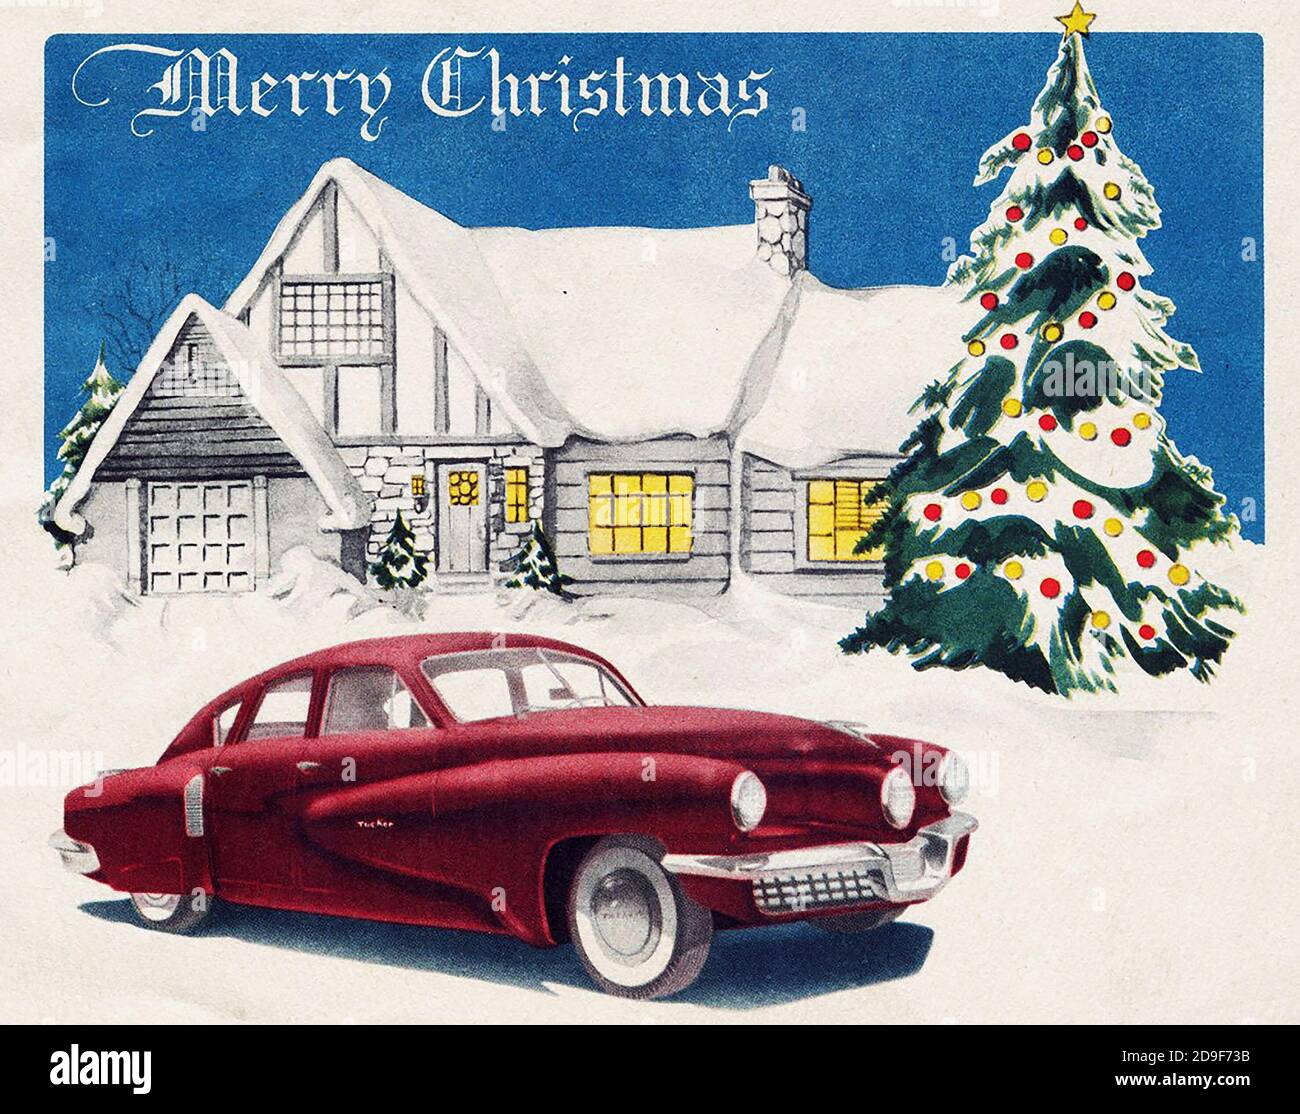 Illustrationen zu Weihnachten. Weihnachten im alten Stil auf Vintage-Art. Stockfoto